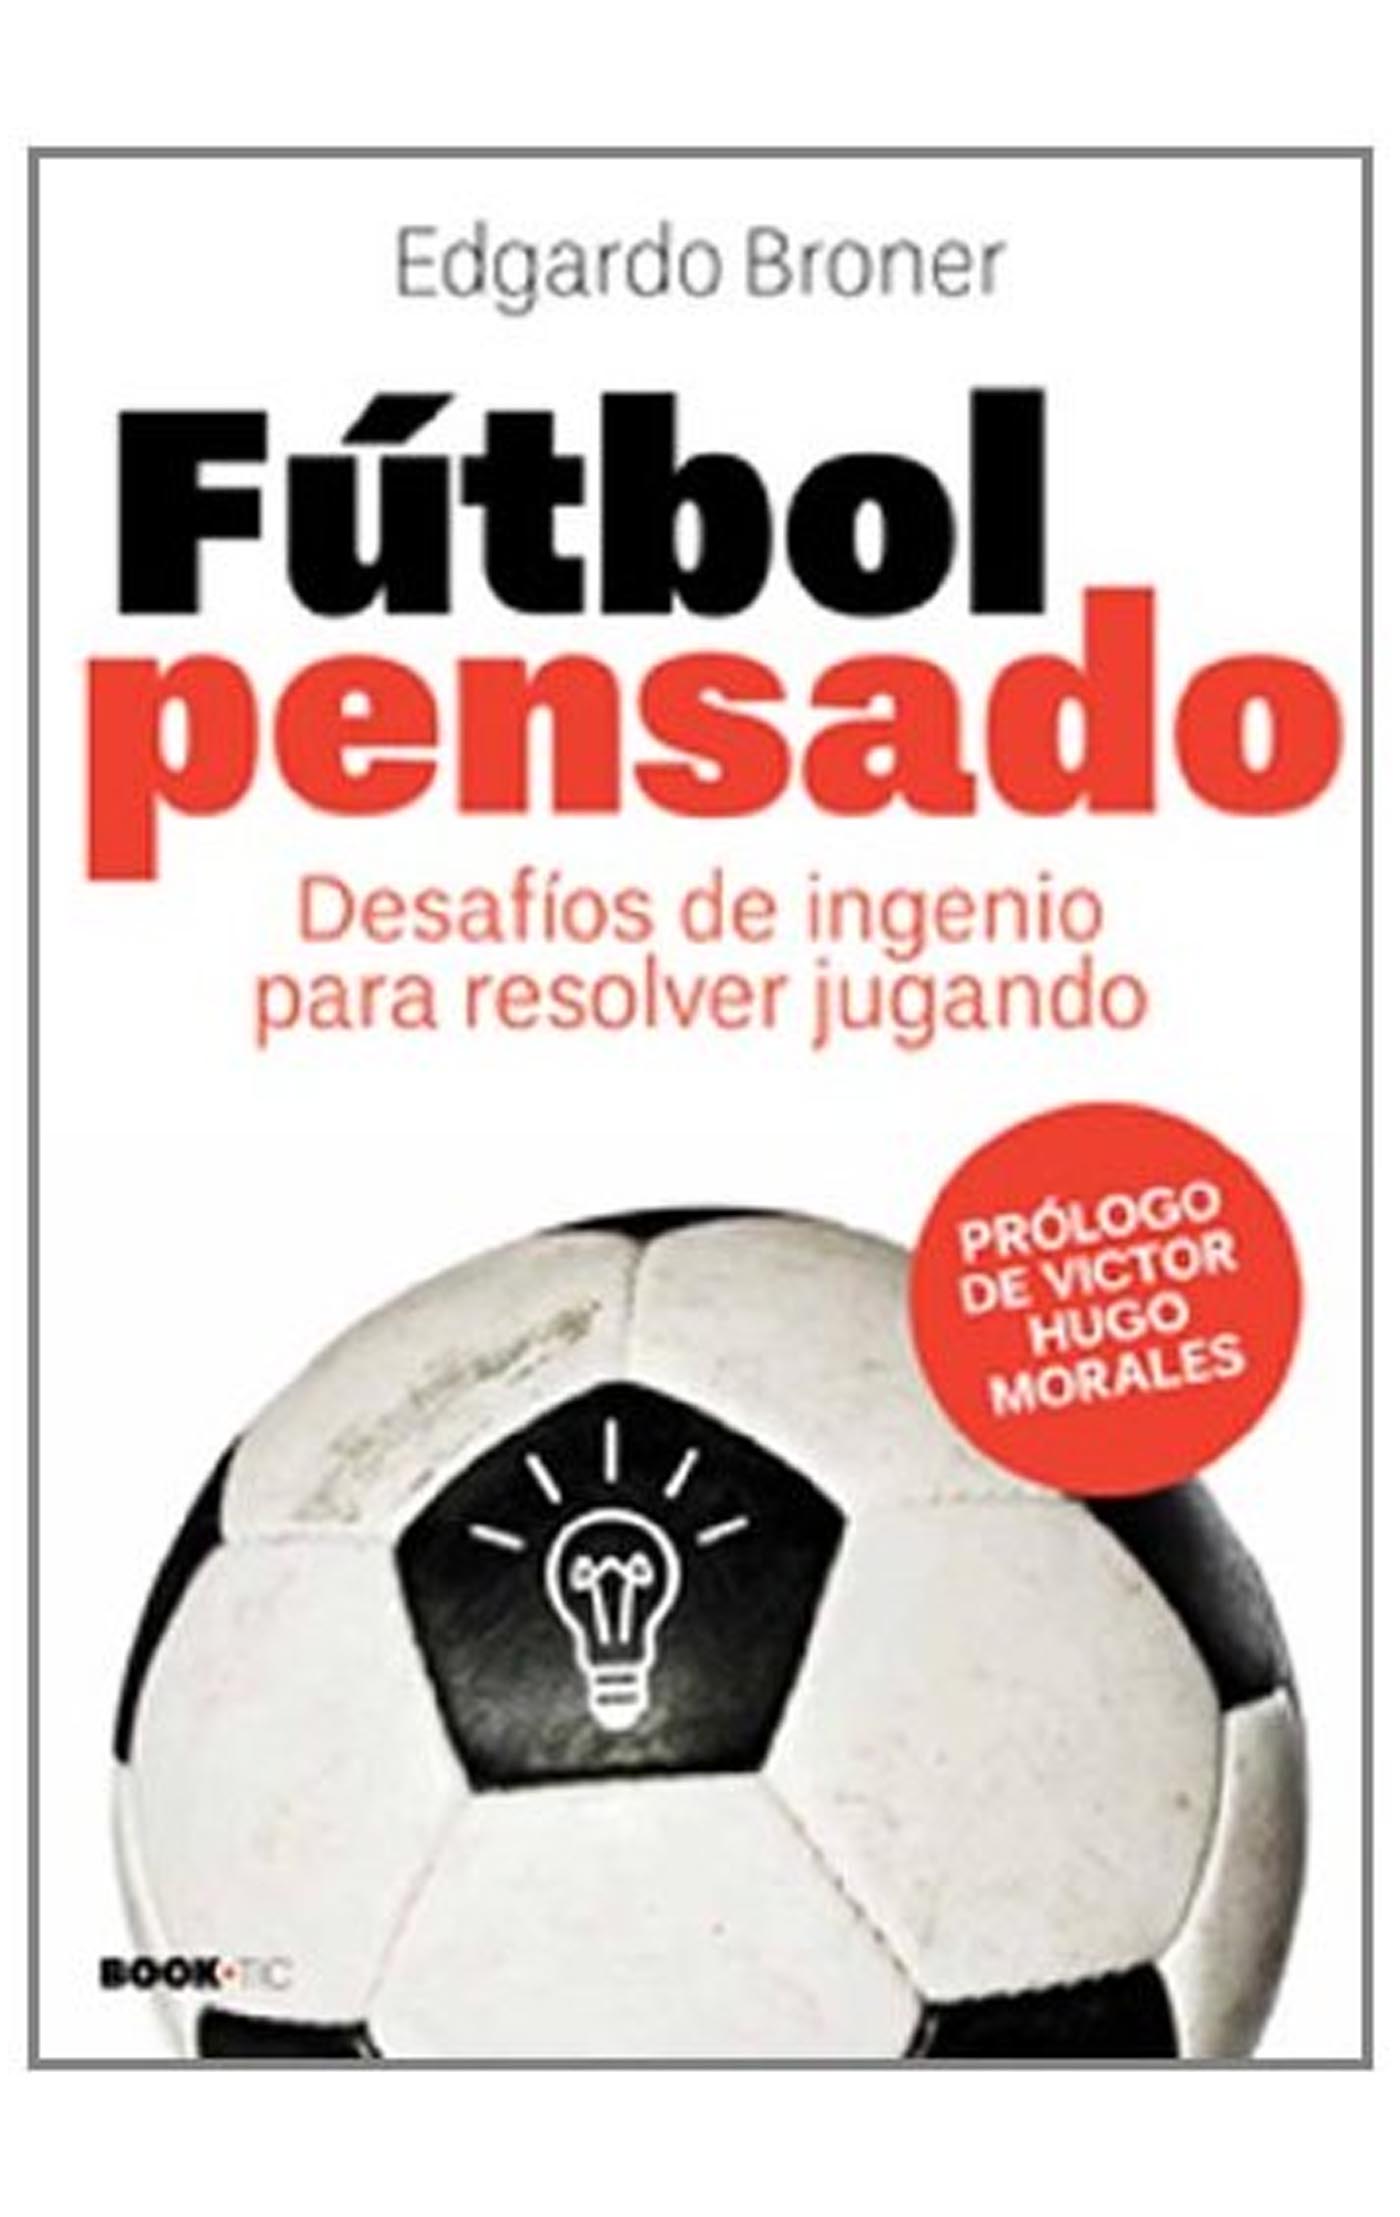 Editorial Cosas de fútbol